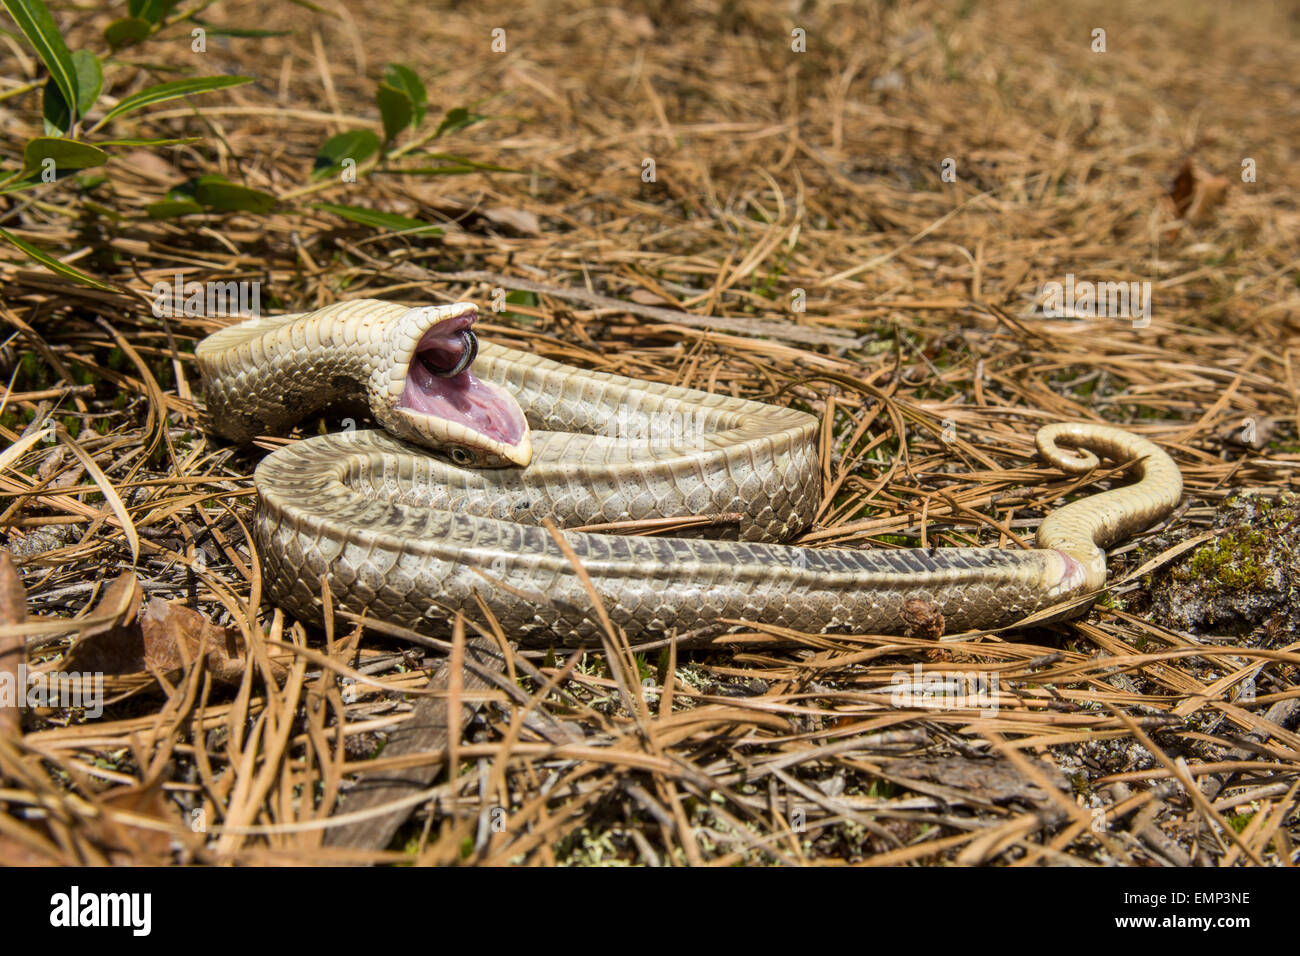 Eastern Hognose Snake Playing Dead Stock Photo 620598170